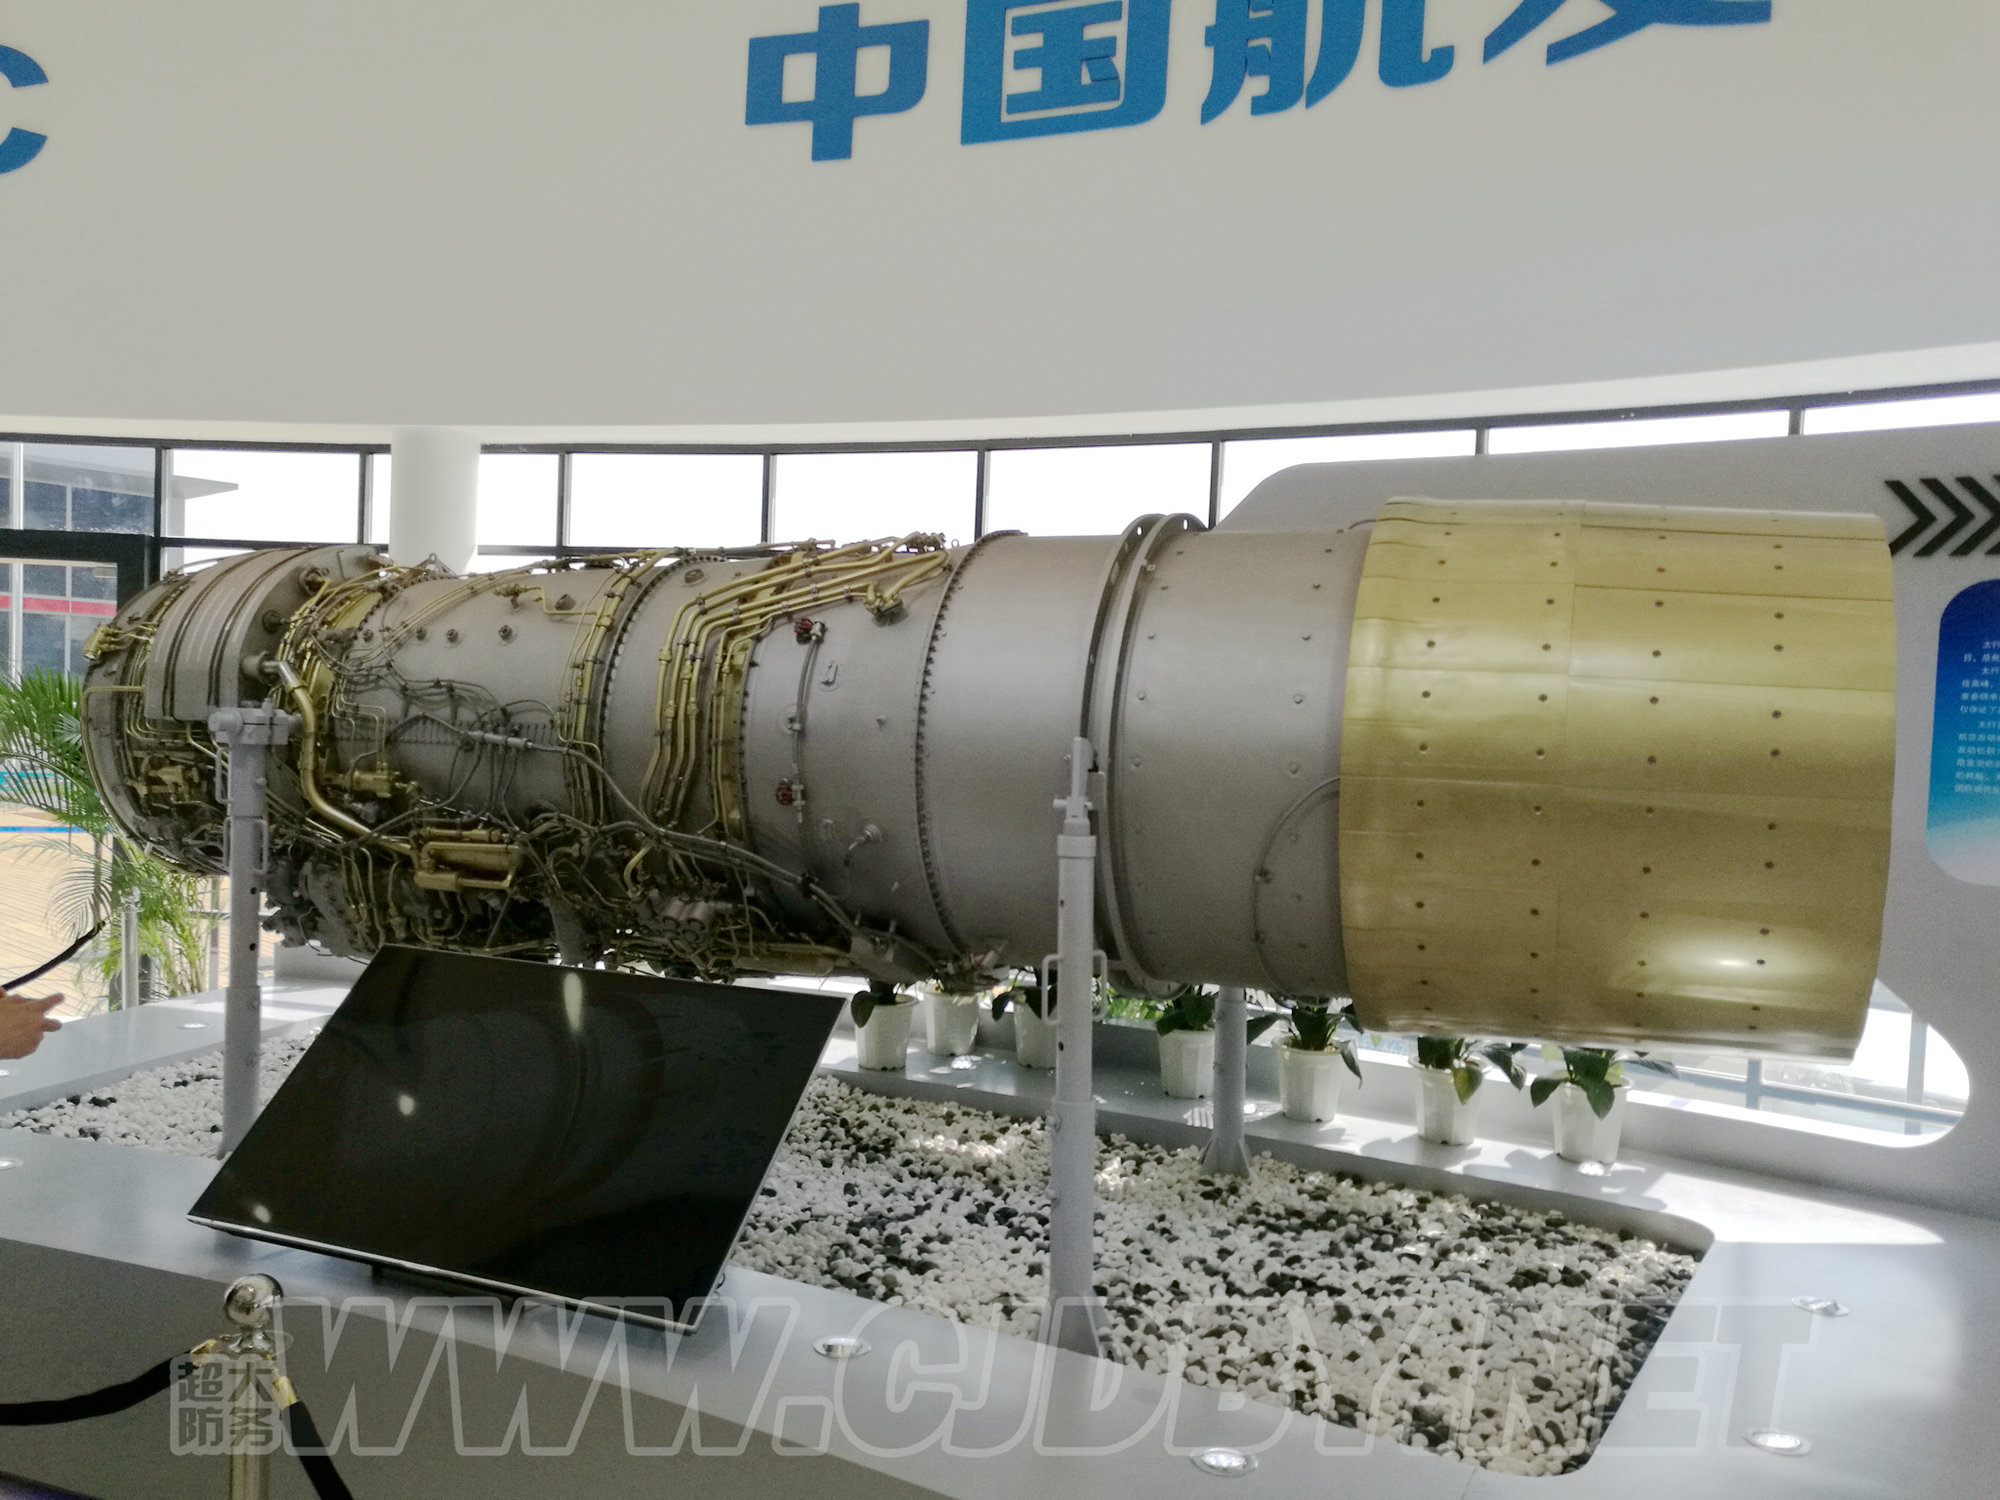 WS-10B maybe - Zhuhai 2016 - 2.jpg